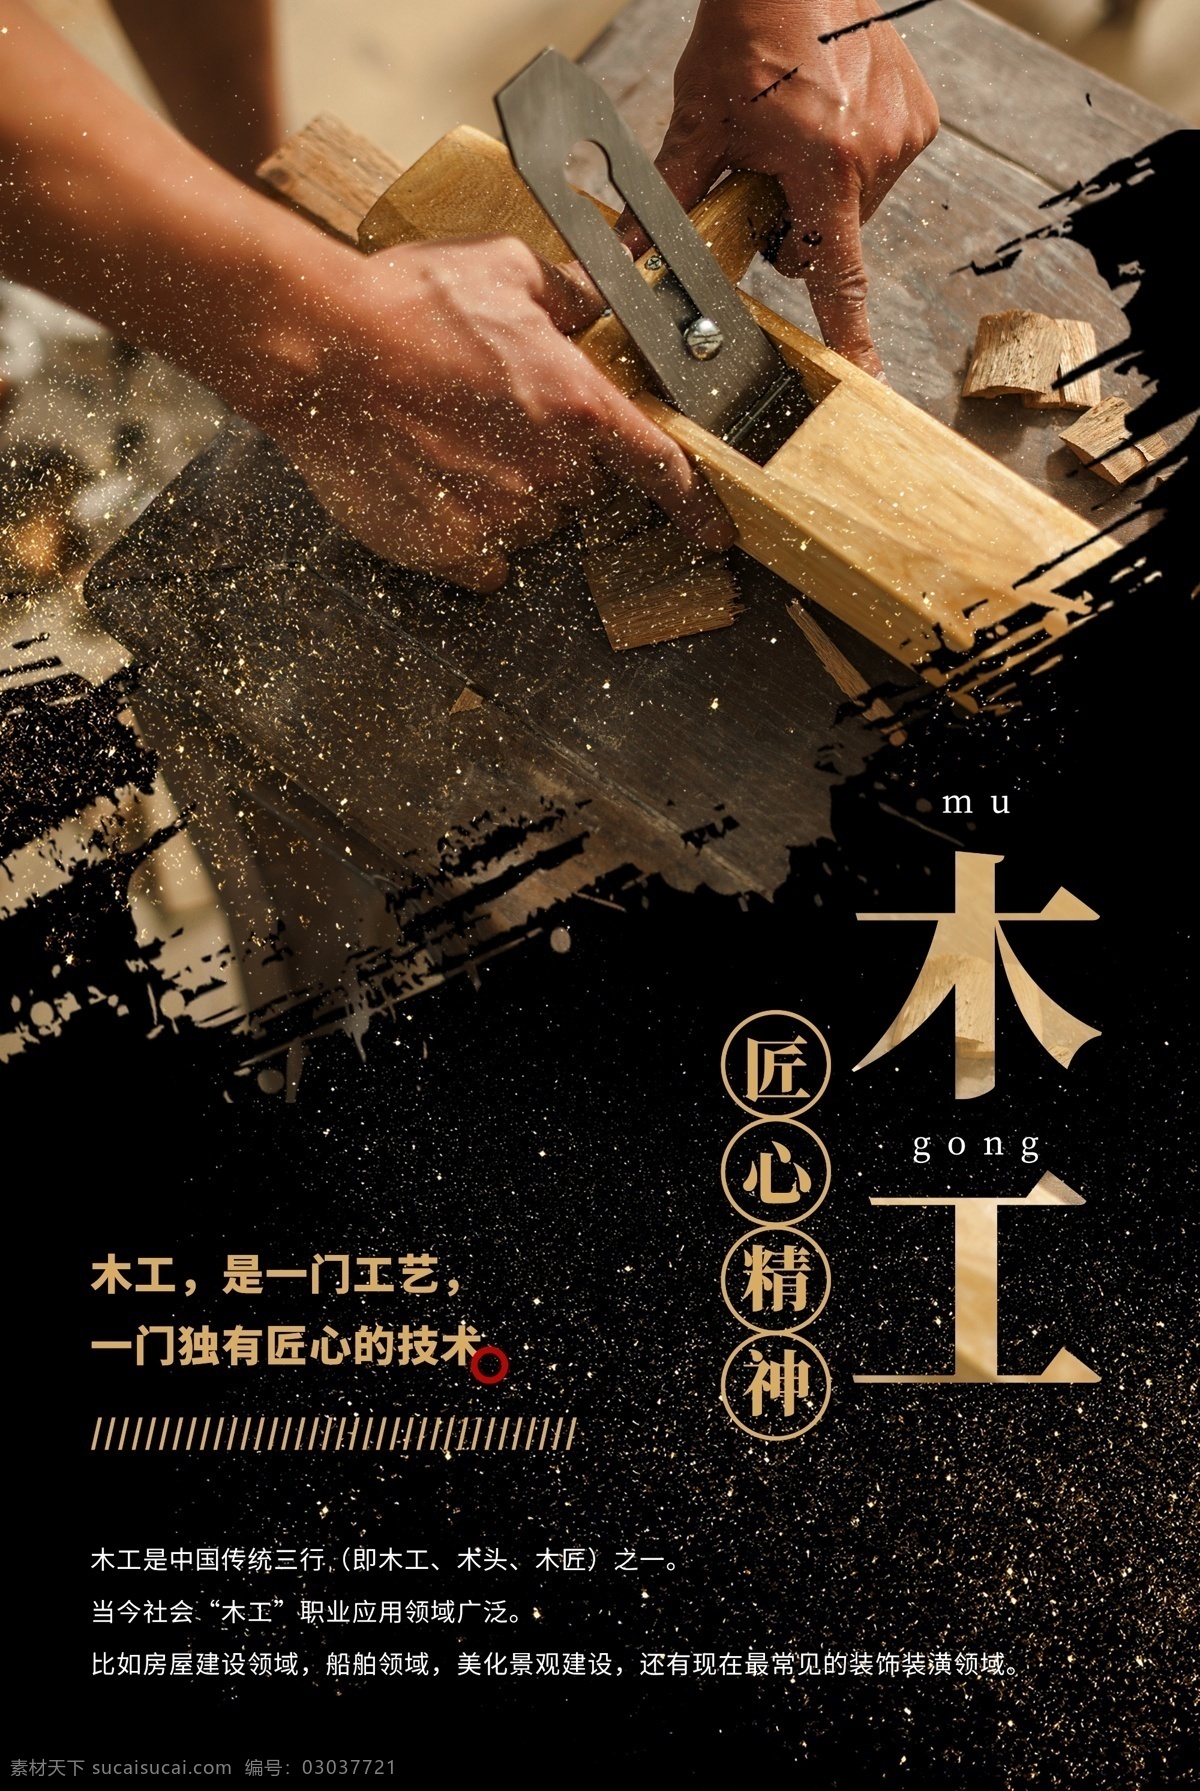 木工 传统 公益活动 宣传海报 公益 活动 宣传 海报 社会